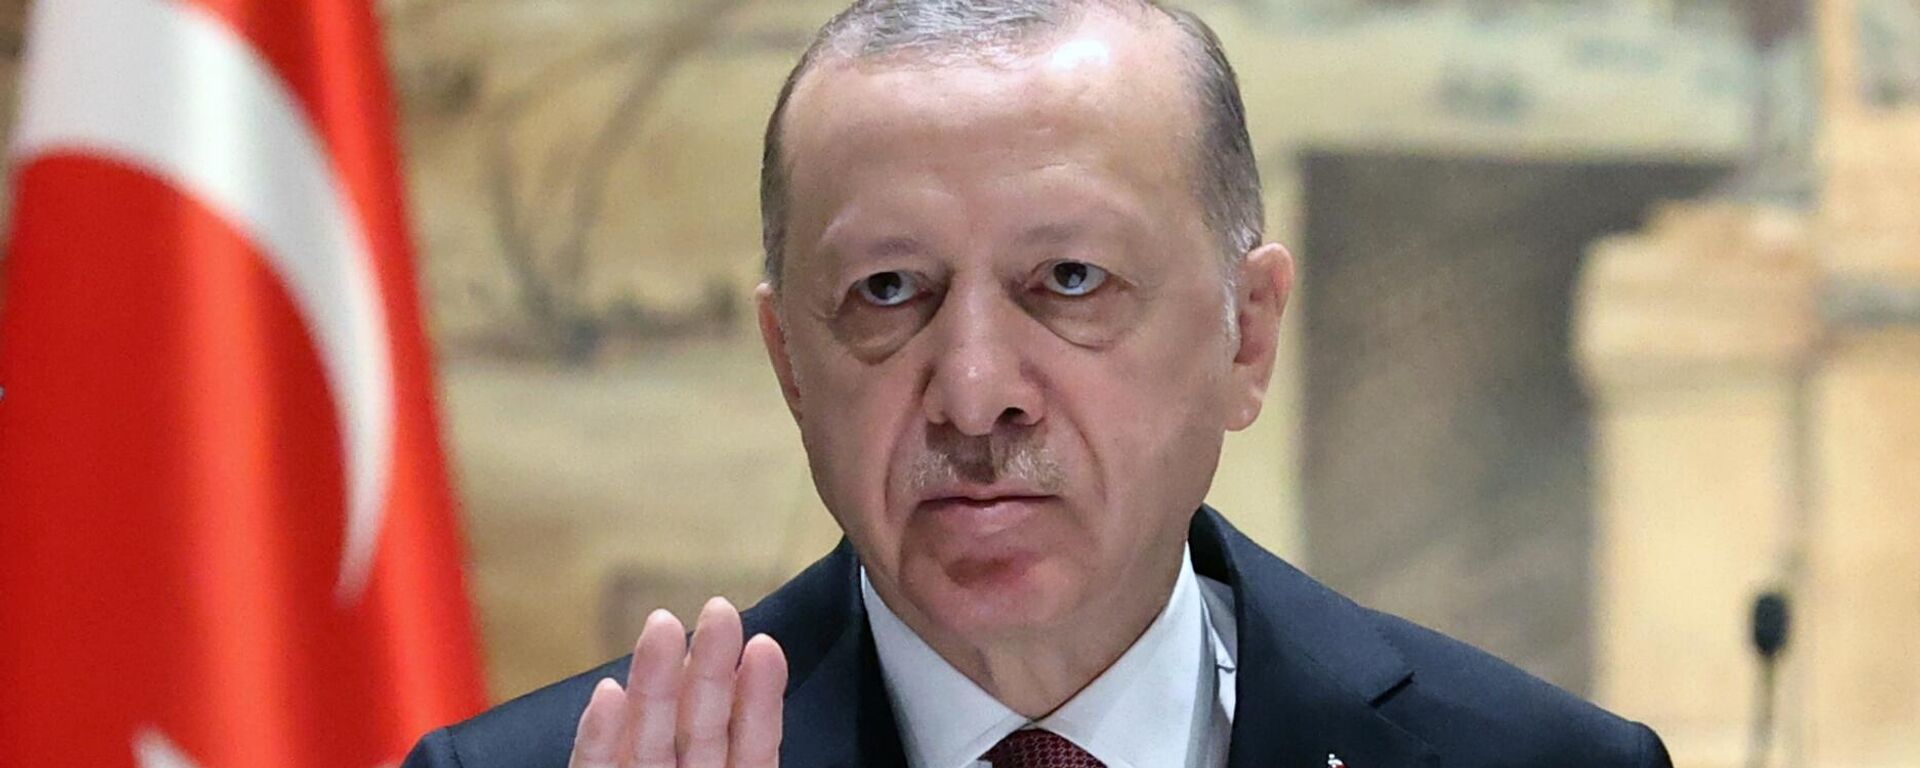 O presidente turco Recep Tayyip Erdogan participa das negociações russo-ucranianas no Palácio Dolmabahçe, em Istambul, Turquia - Sputnik Brasil, 1920, 19.01.2023